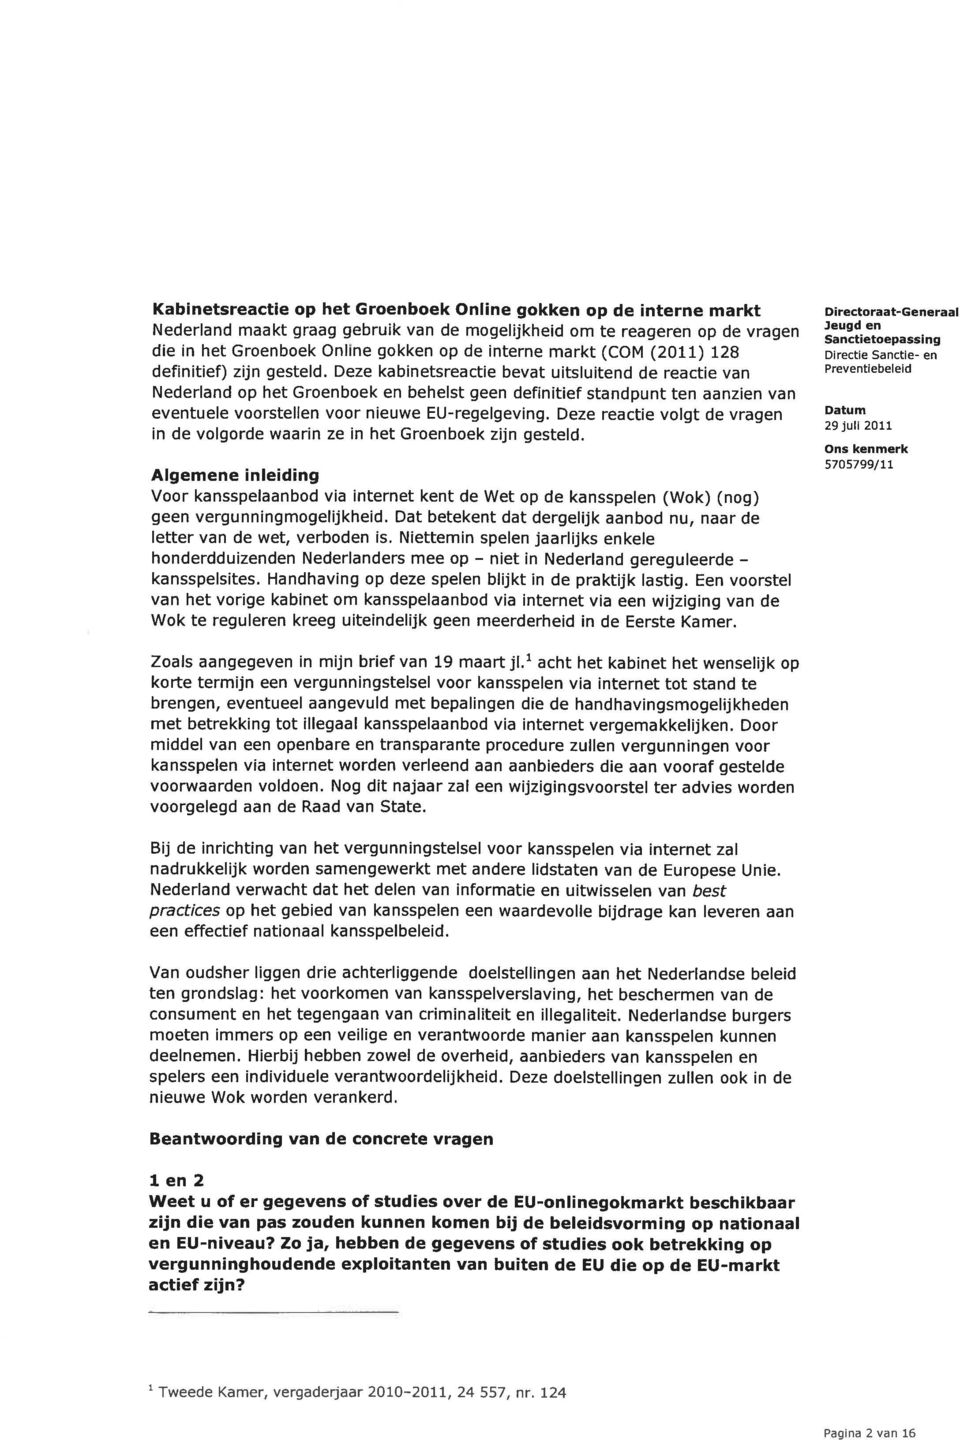 Deze kabinetsreactie bevat uitsluitend de reactie van Nederland op het Groenboek en behelst geen definitief standpunt ten aanzien van eventuele voorstellen voor nieuwe EU-regelgeving.